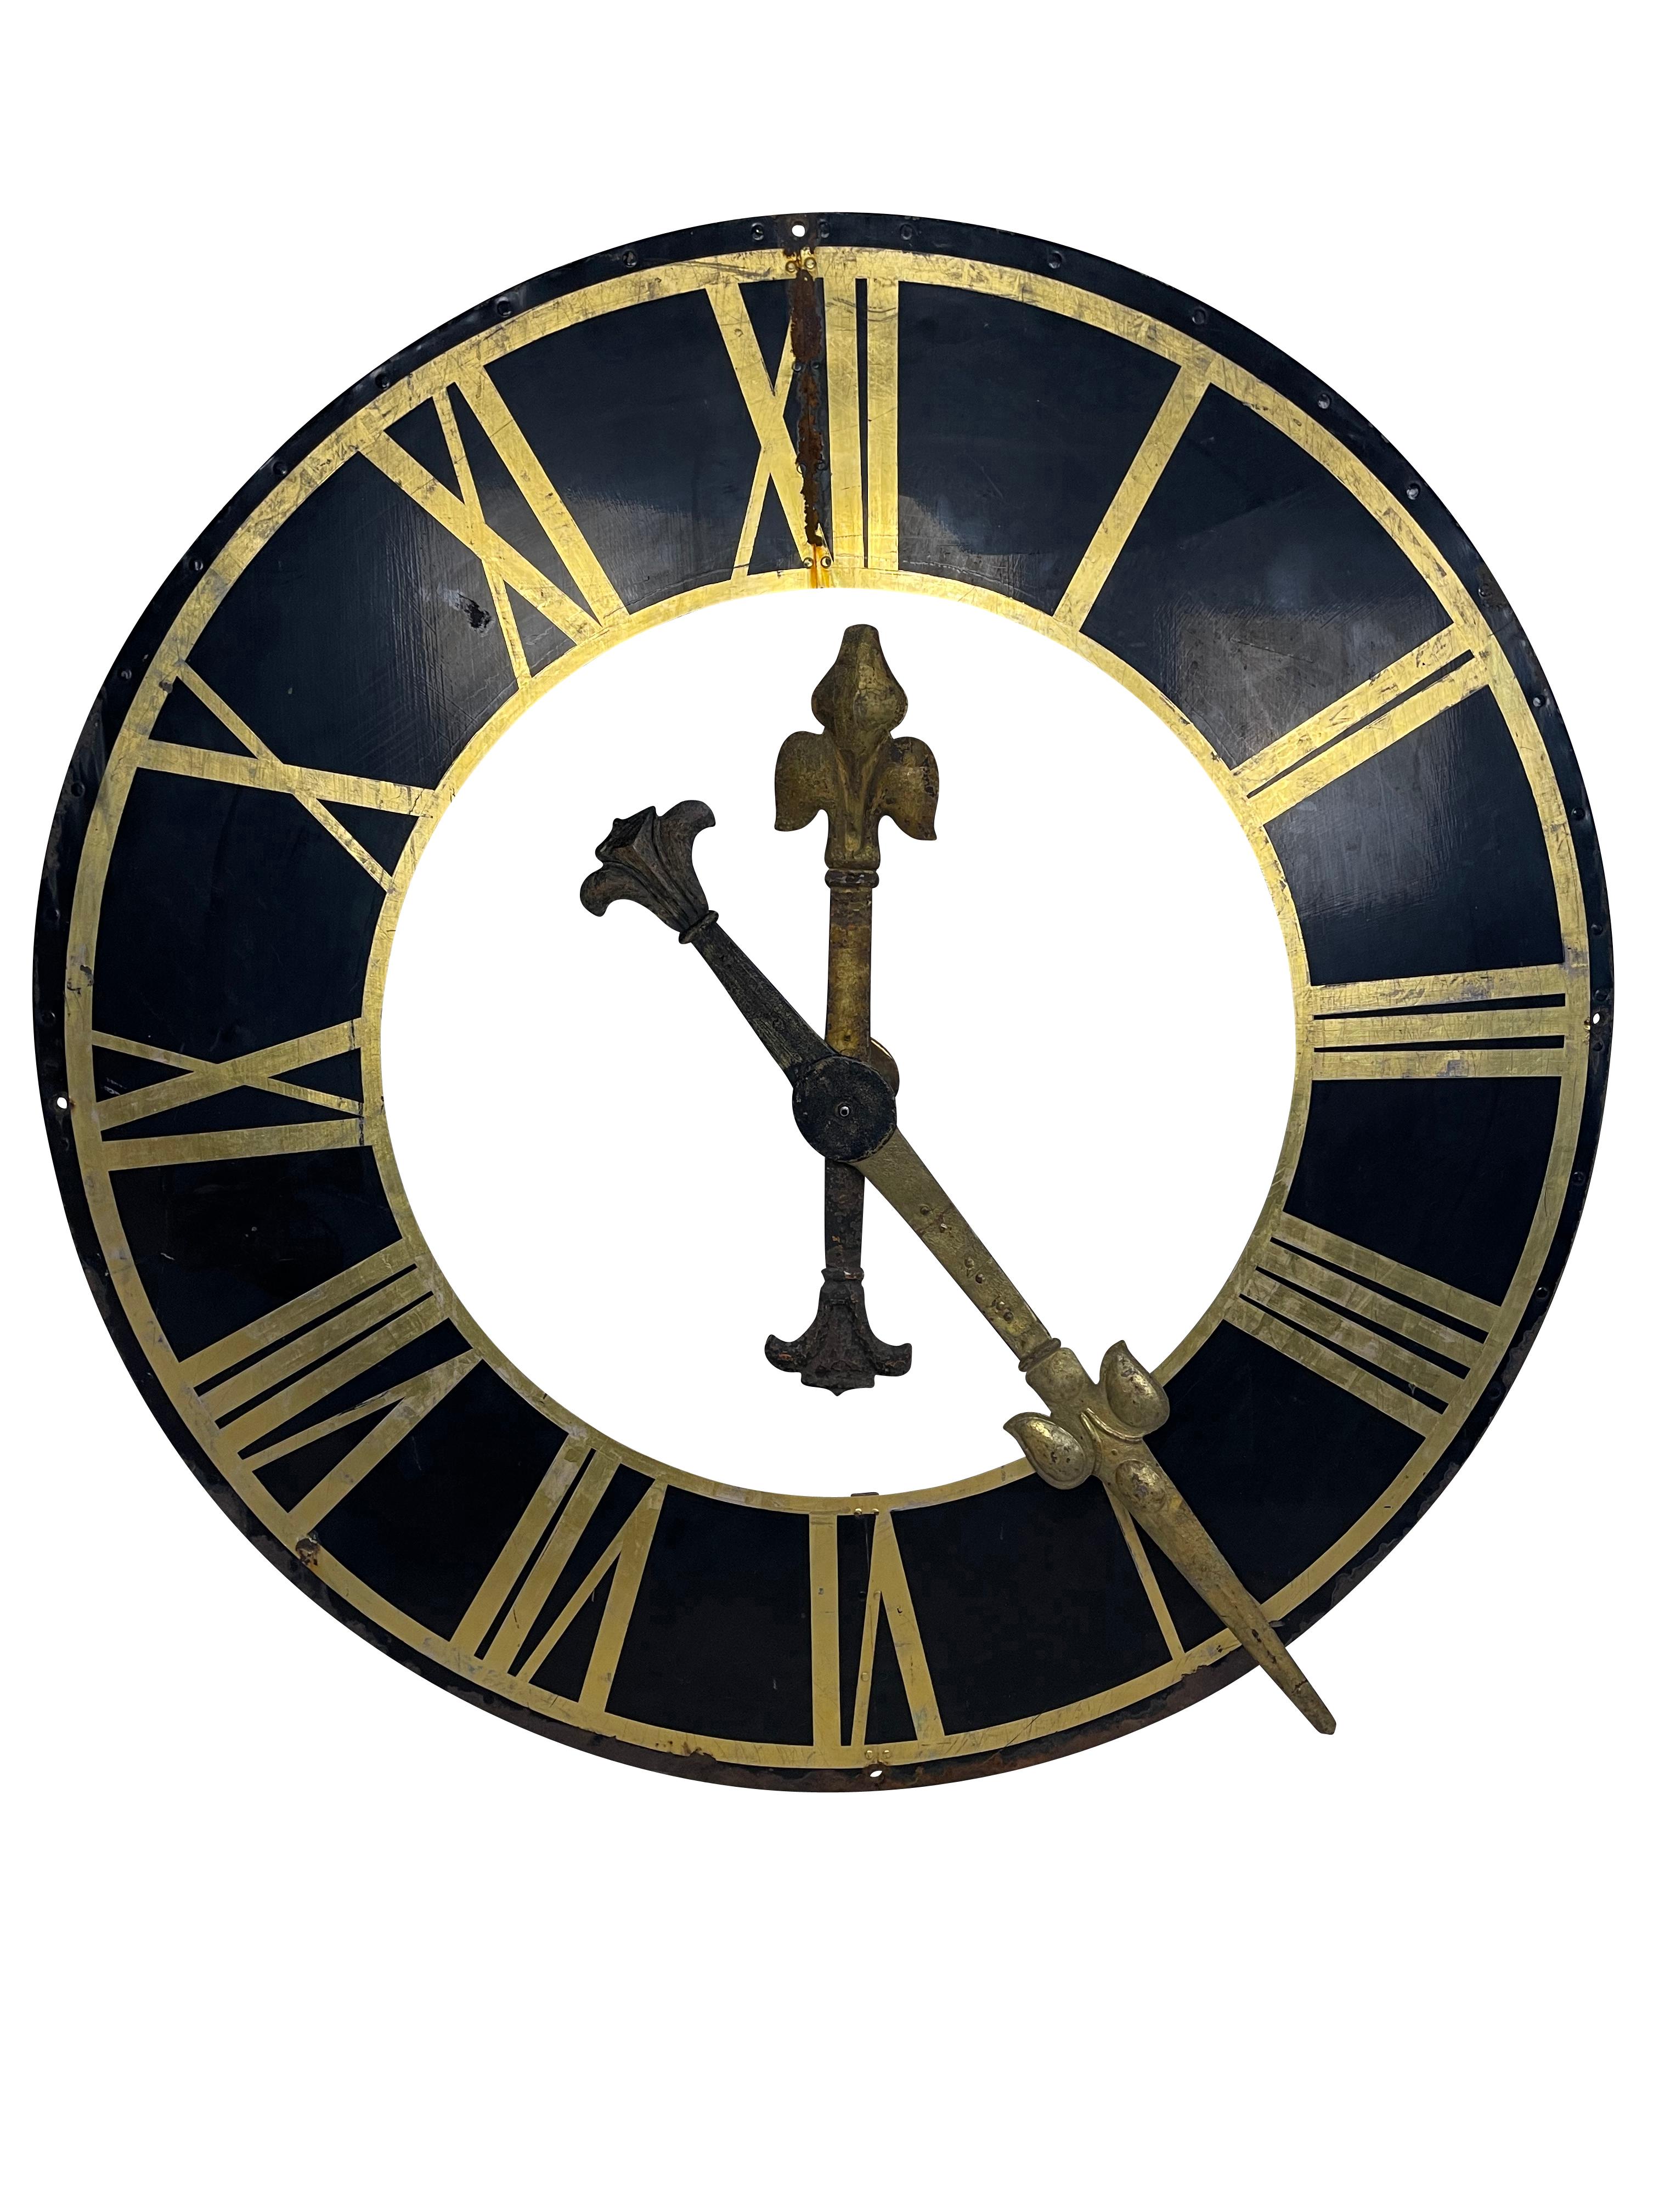 Un grand cadran d'horloge en métal noir d'origine du 19e siècle, des chiffres romains dorés et des aiguilles dorées. Belle patine sur le cadran et les aiguilles. Pour le jardin ou l'intérieur. Conception très élégante, bon état structurel. Aucun